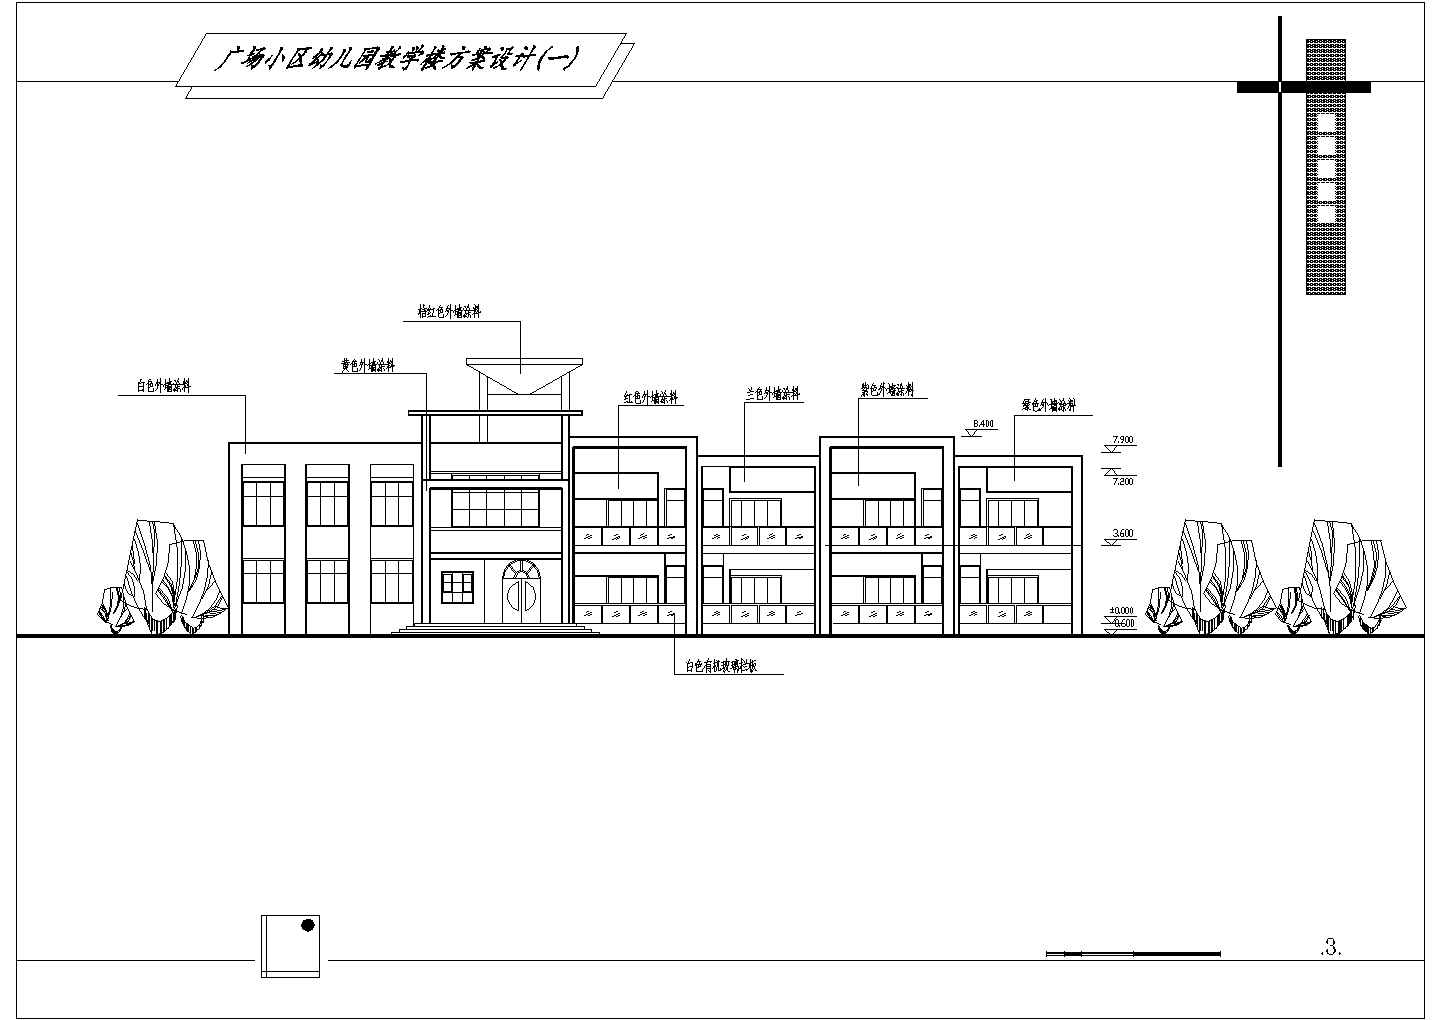 二层约982平米砖混结构广场小区幼儿园设计图